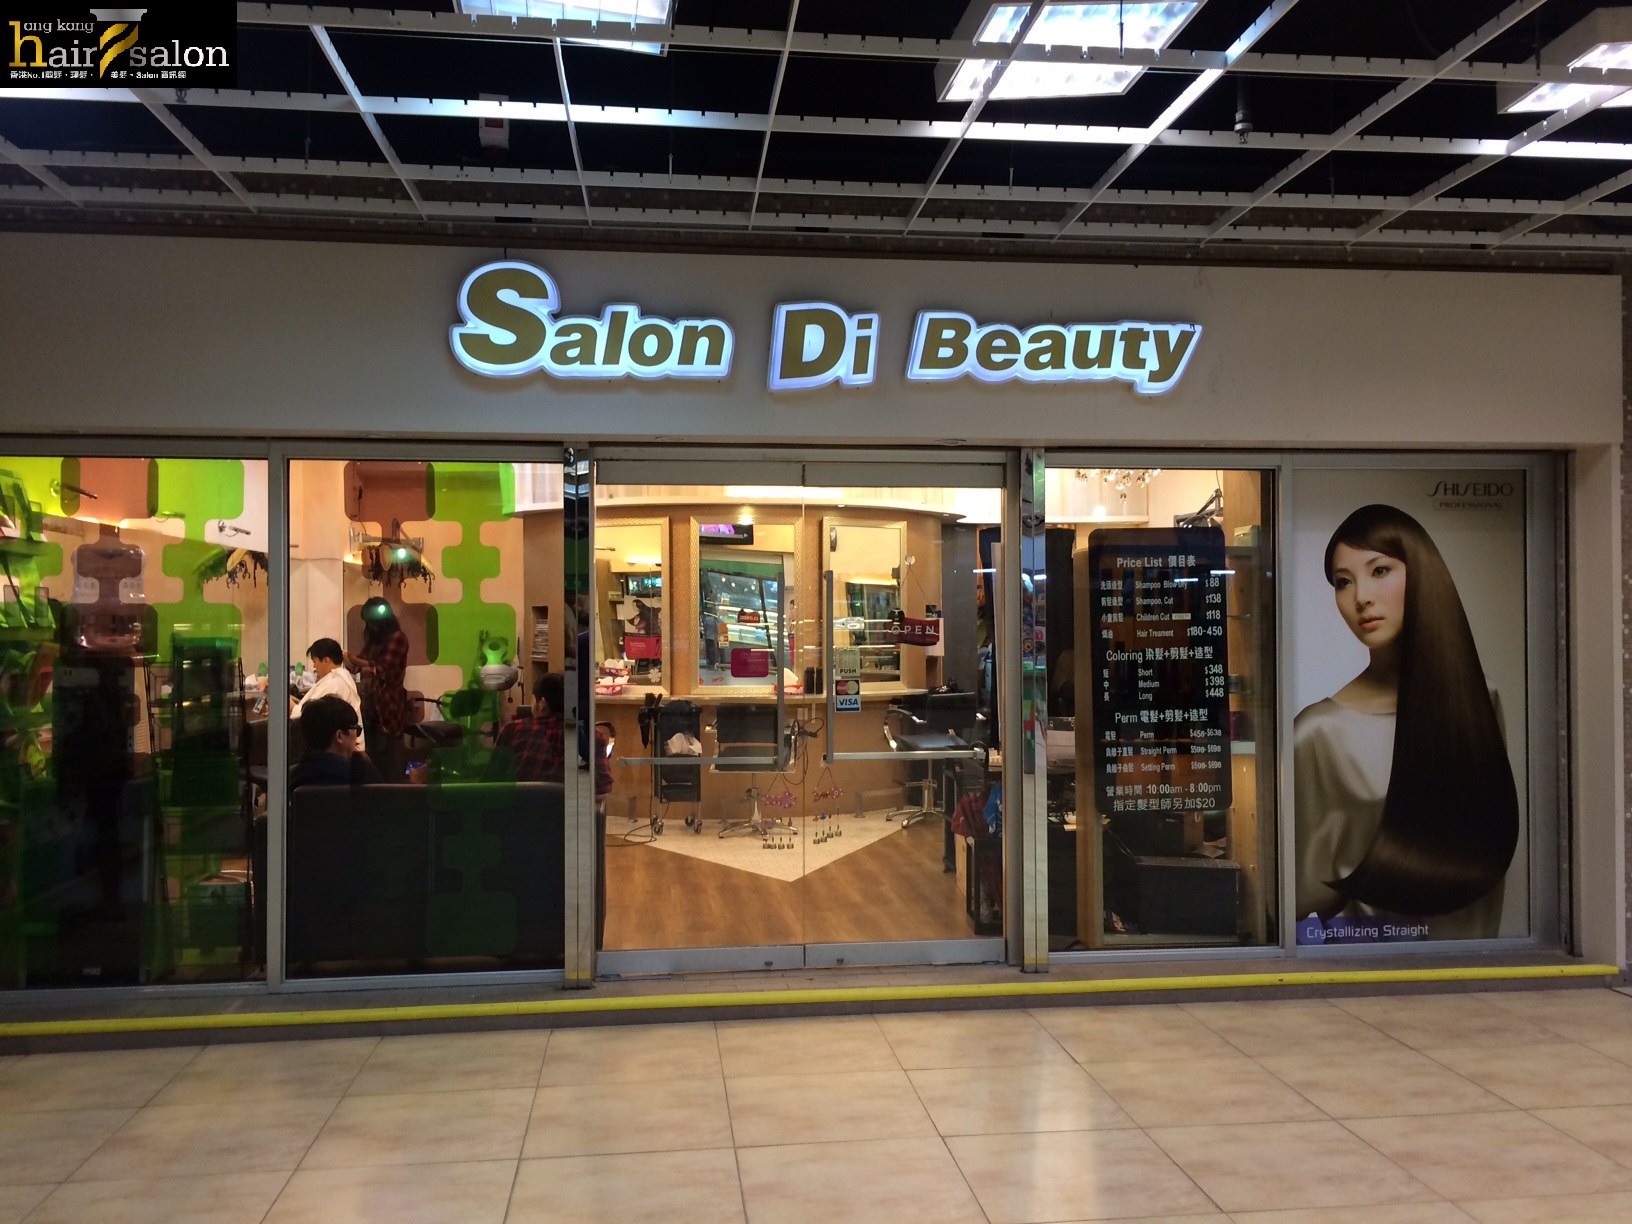 洗剪吹/洗吹造型: Salon Di Beauty 集美軒髮廊 (龍蟠苑商場)